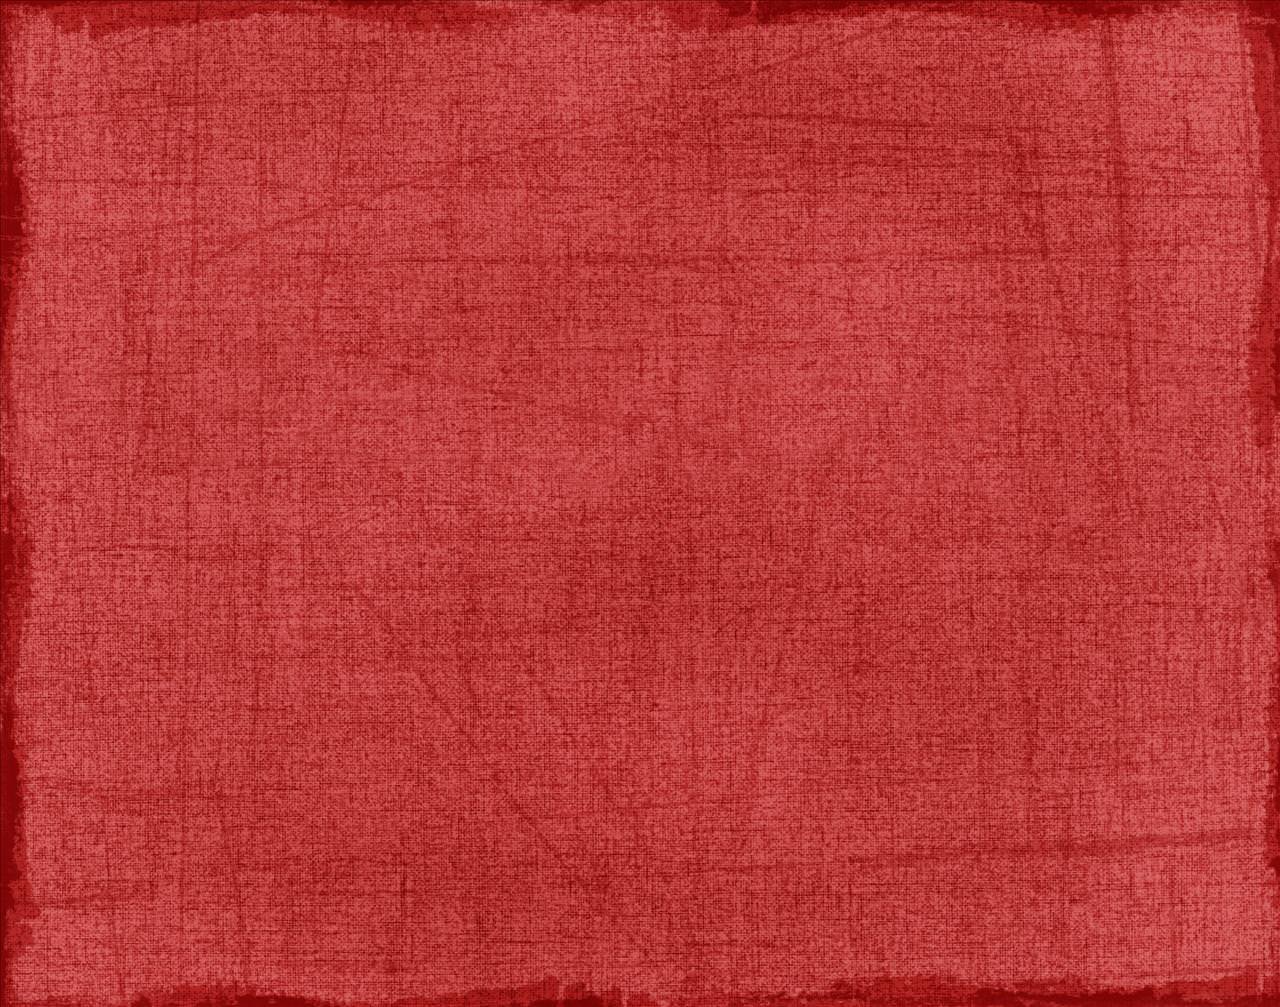 Кумач вый ситц вый. Текстура ткани. Красная ткань. Текстура старой ткани. Старинная ткань.